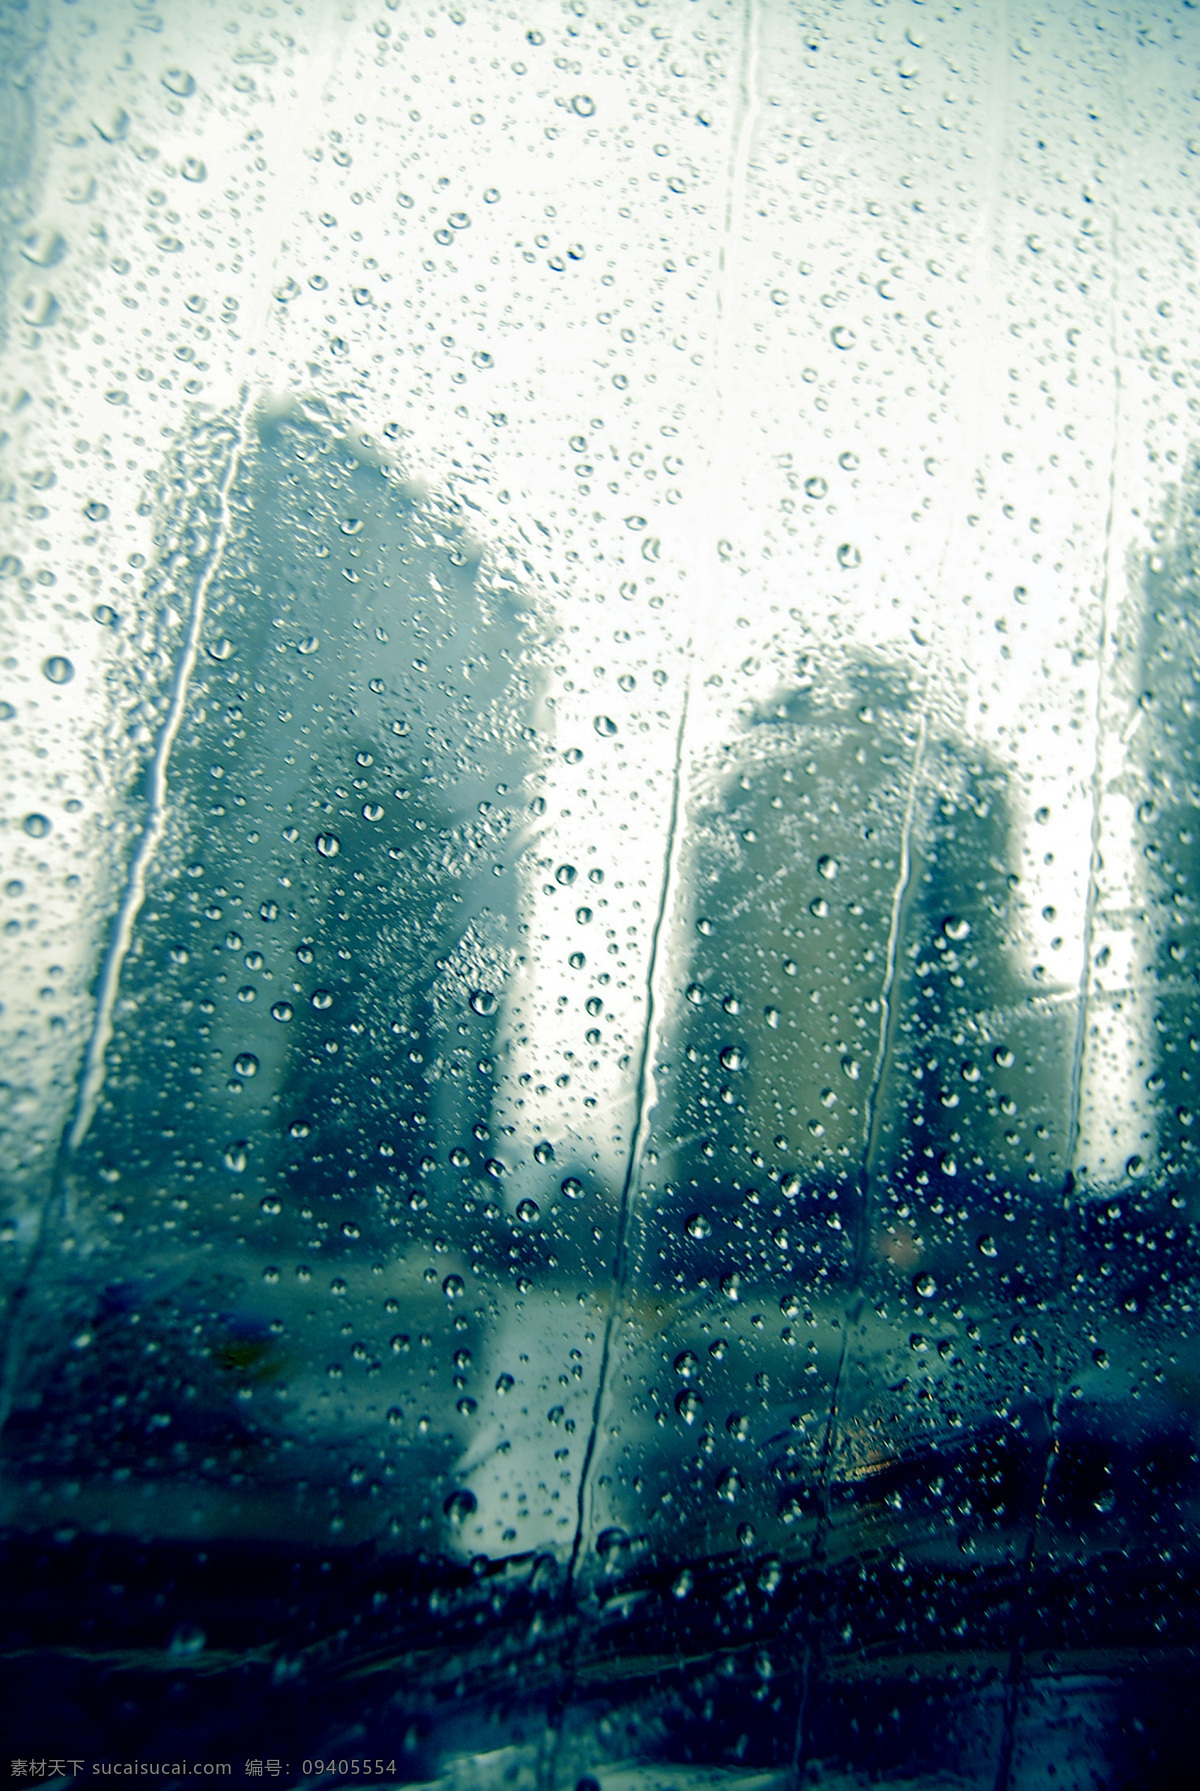 雨 中城 市 玻璃 建筑 楼房 旅游摄影 梦幻 摄影图库 水滴 雨中城市 下雨 阴霾 psd源文件